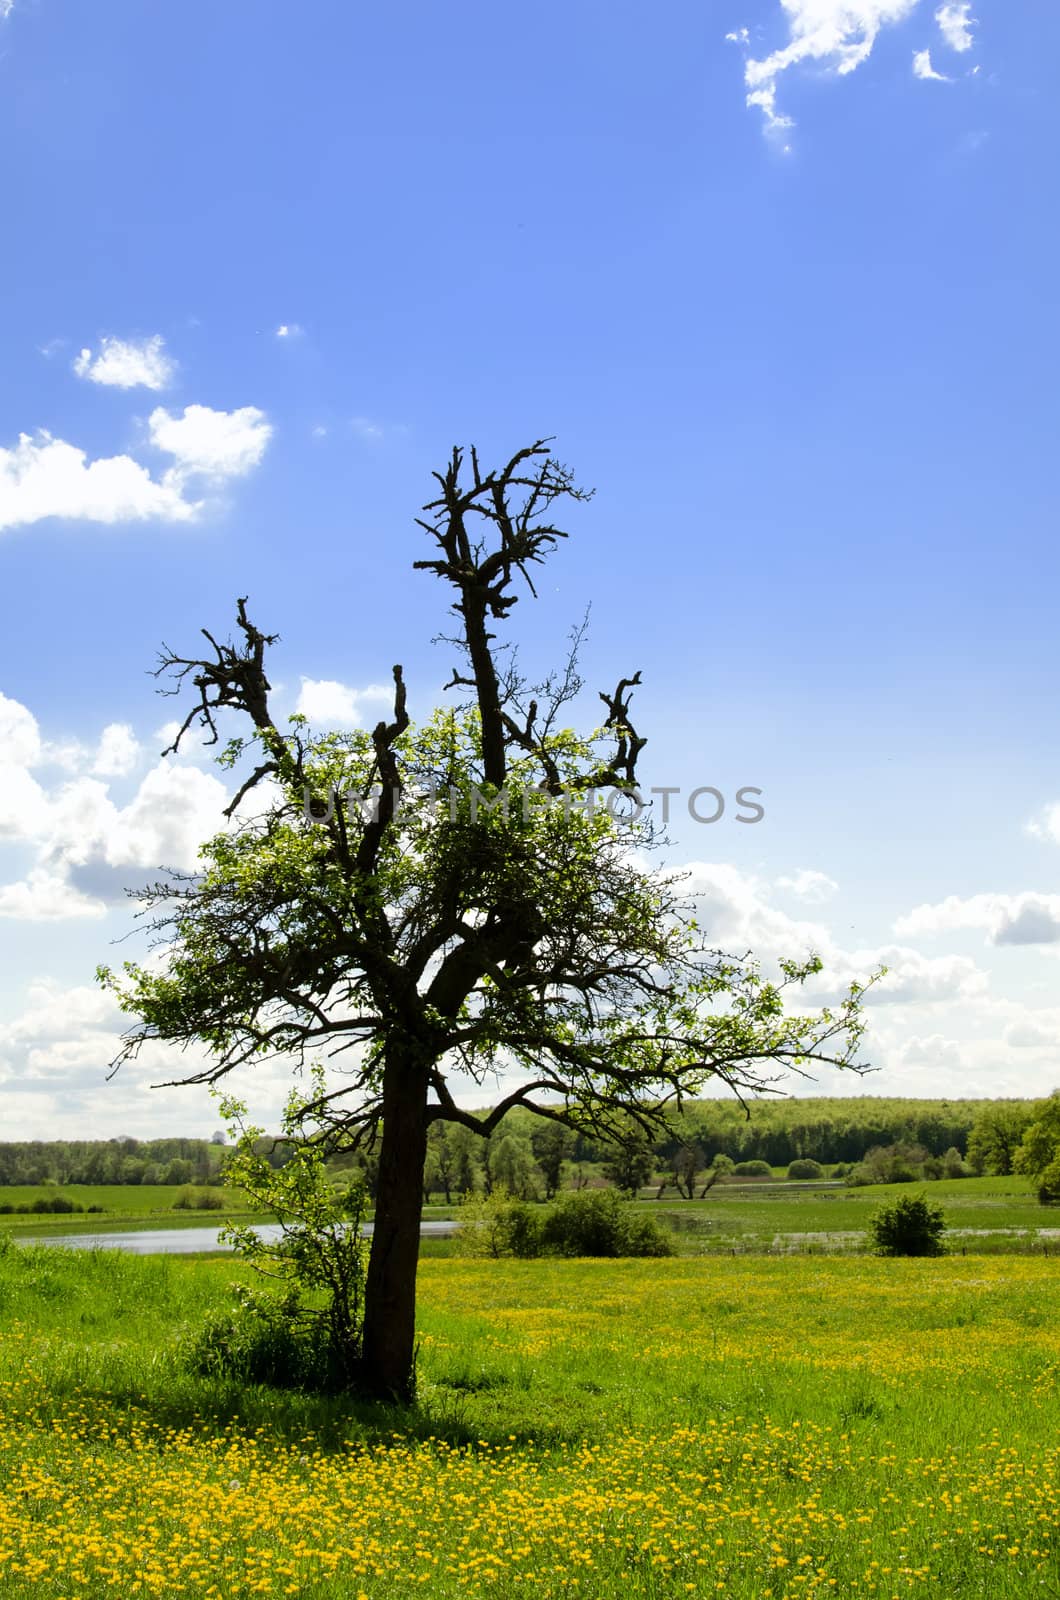 Tree on the Prairie by njaj